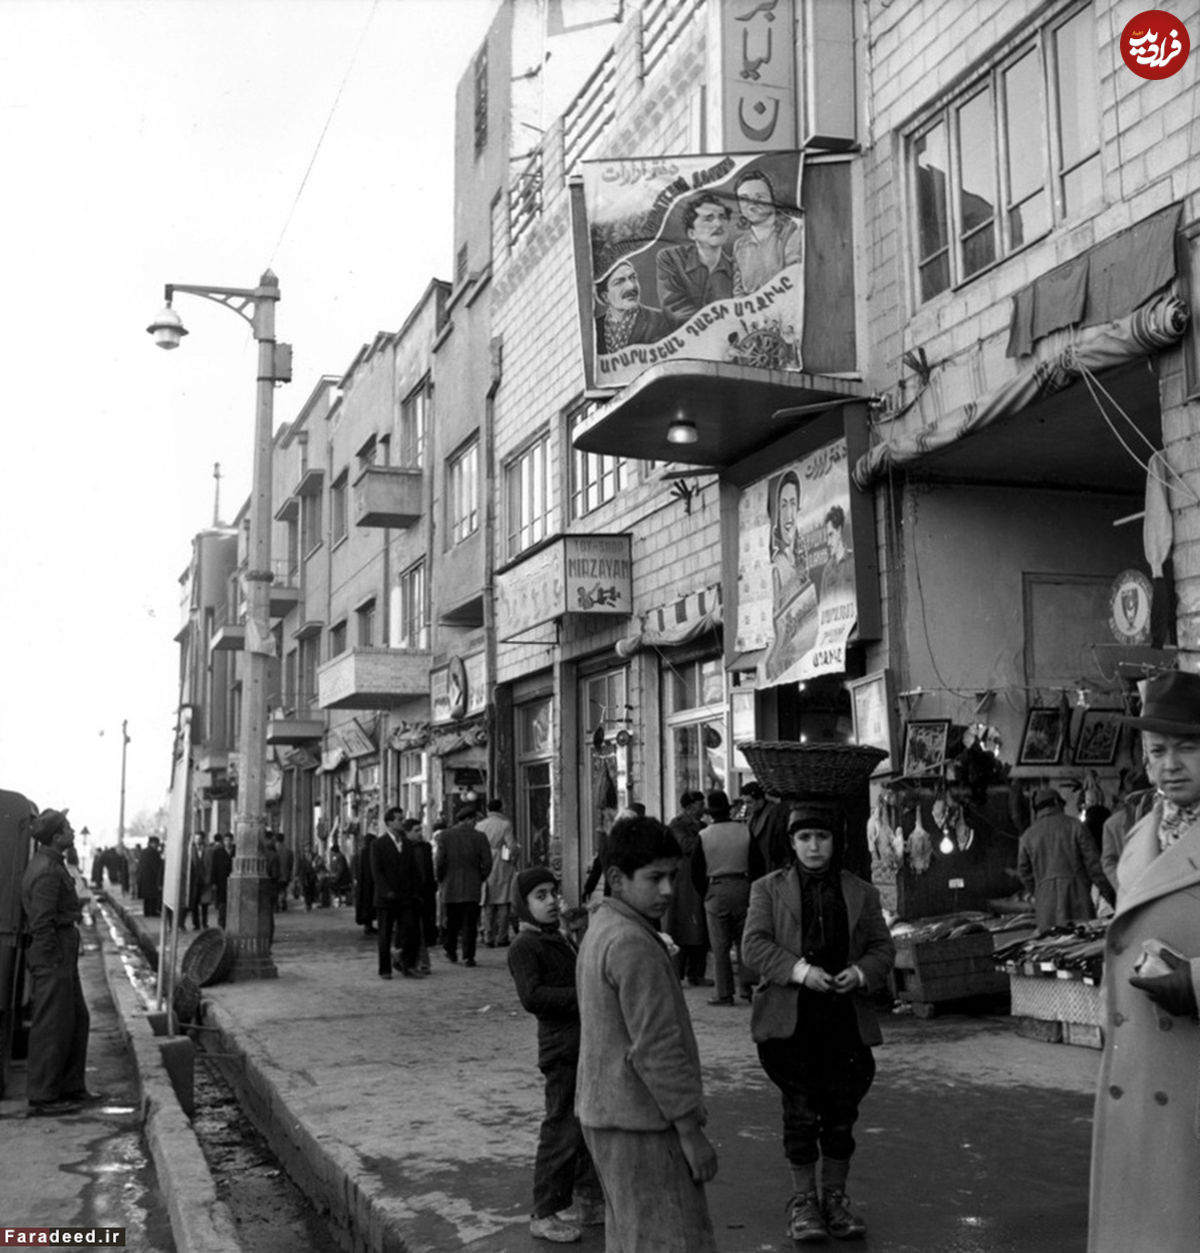 سینما "برلیان" تهران در دهه 1330